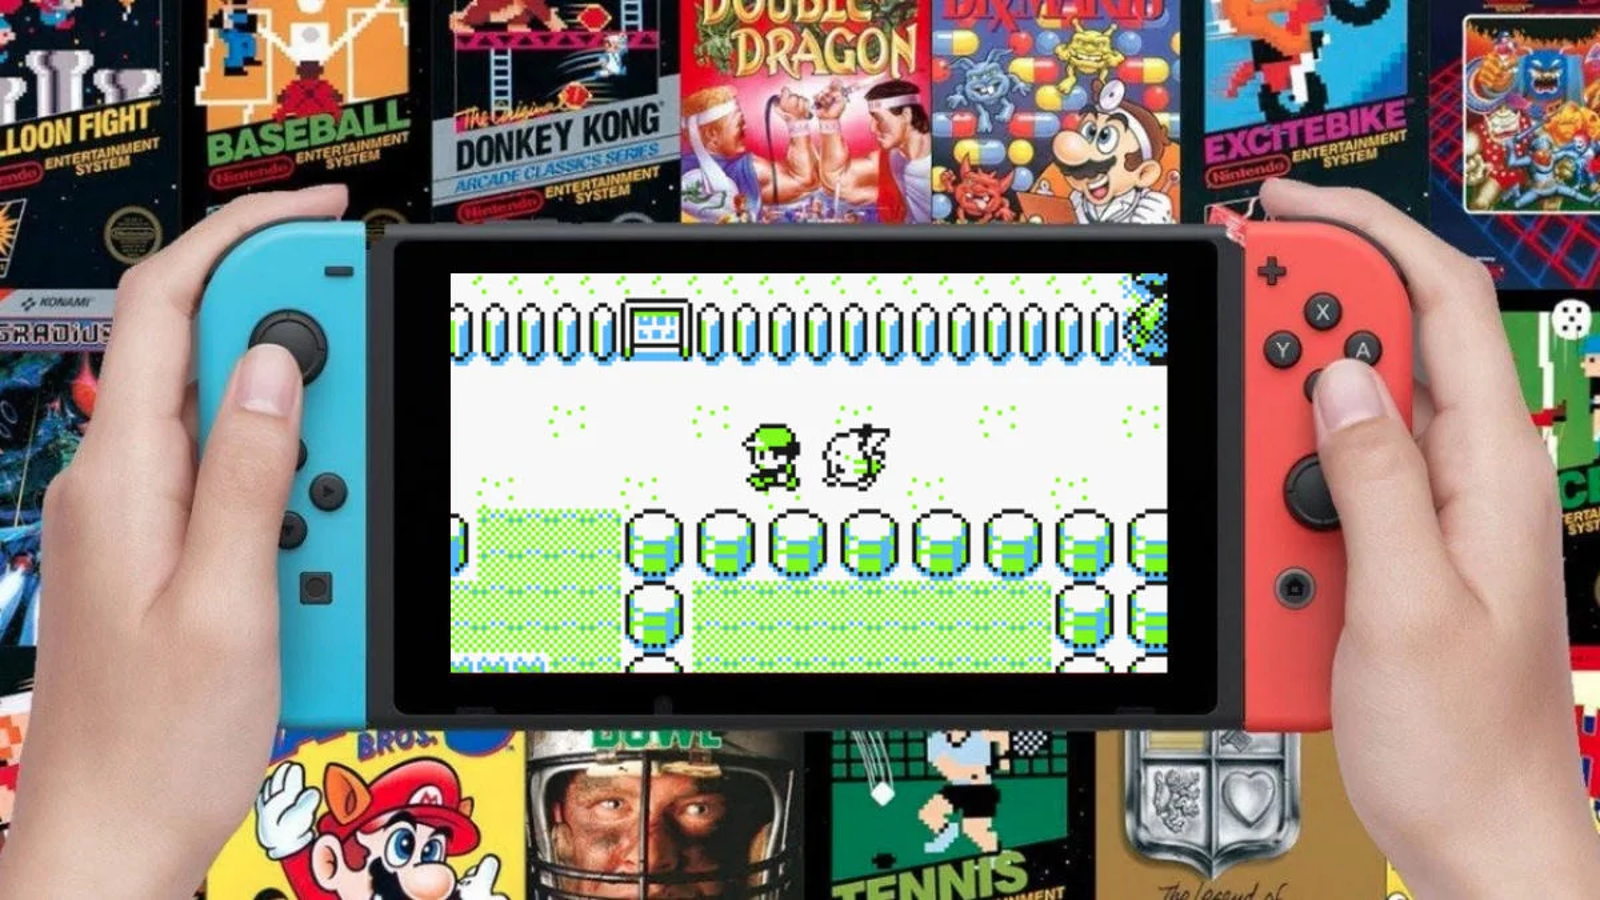 Super Nintendo Entertainment System - Nintendo Switch Online, Aplicações  de download da Nintendo Switch, Jogos